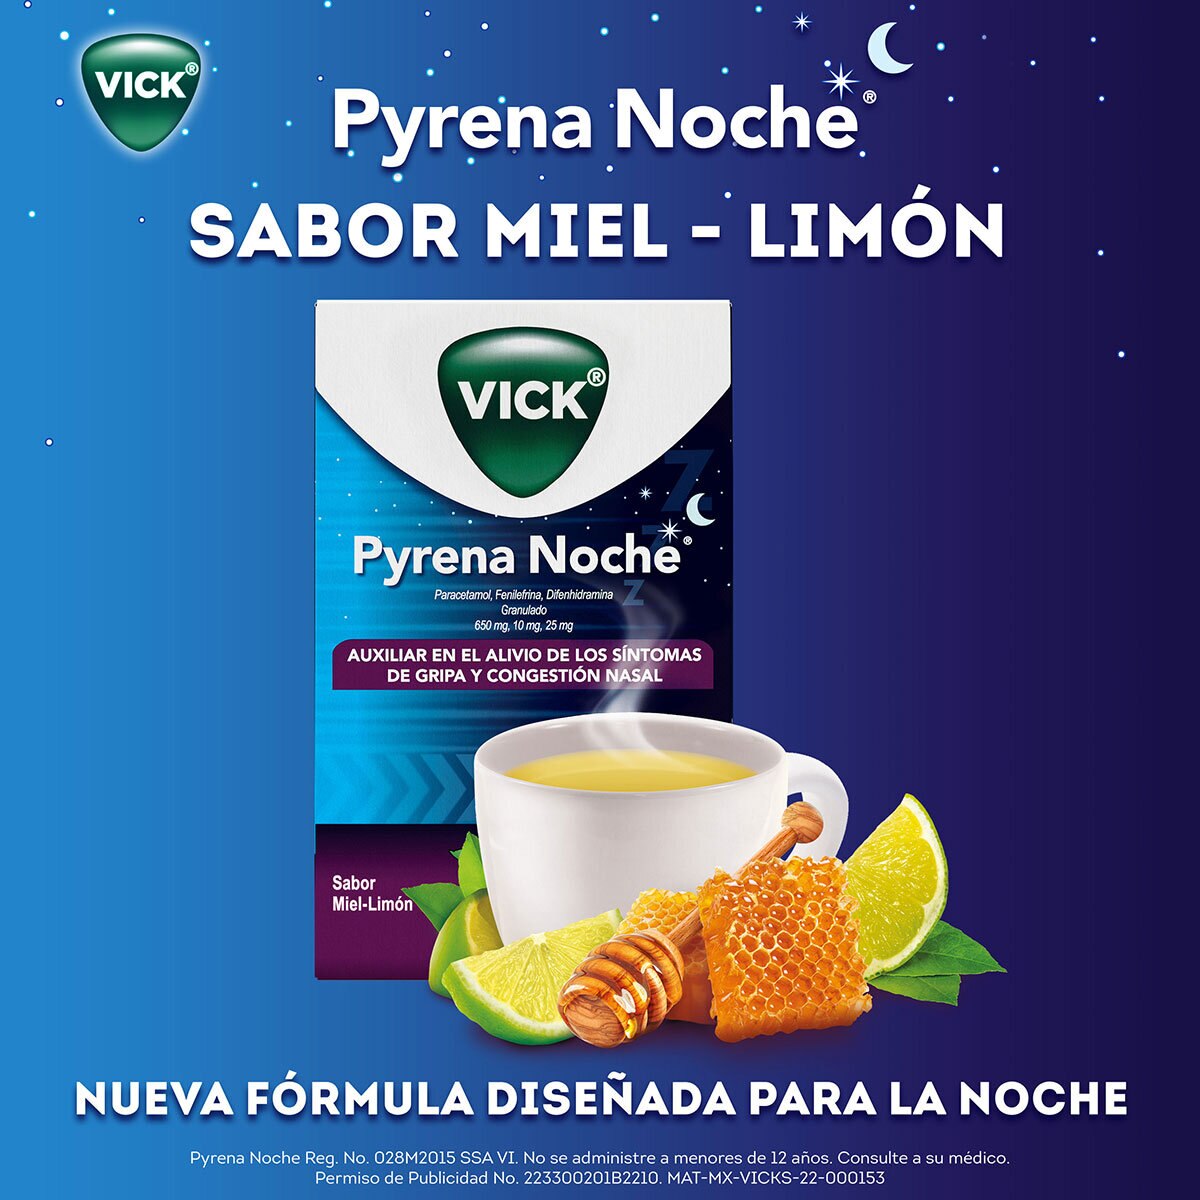 Vick Pyrena Noche 2 Cajas con 5 Sobres c/u